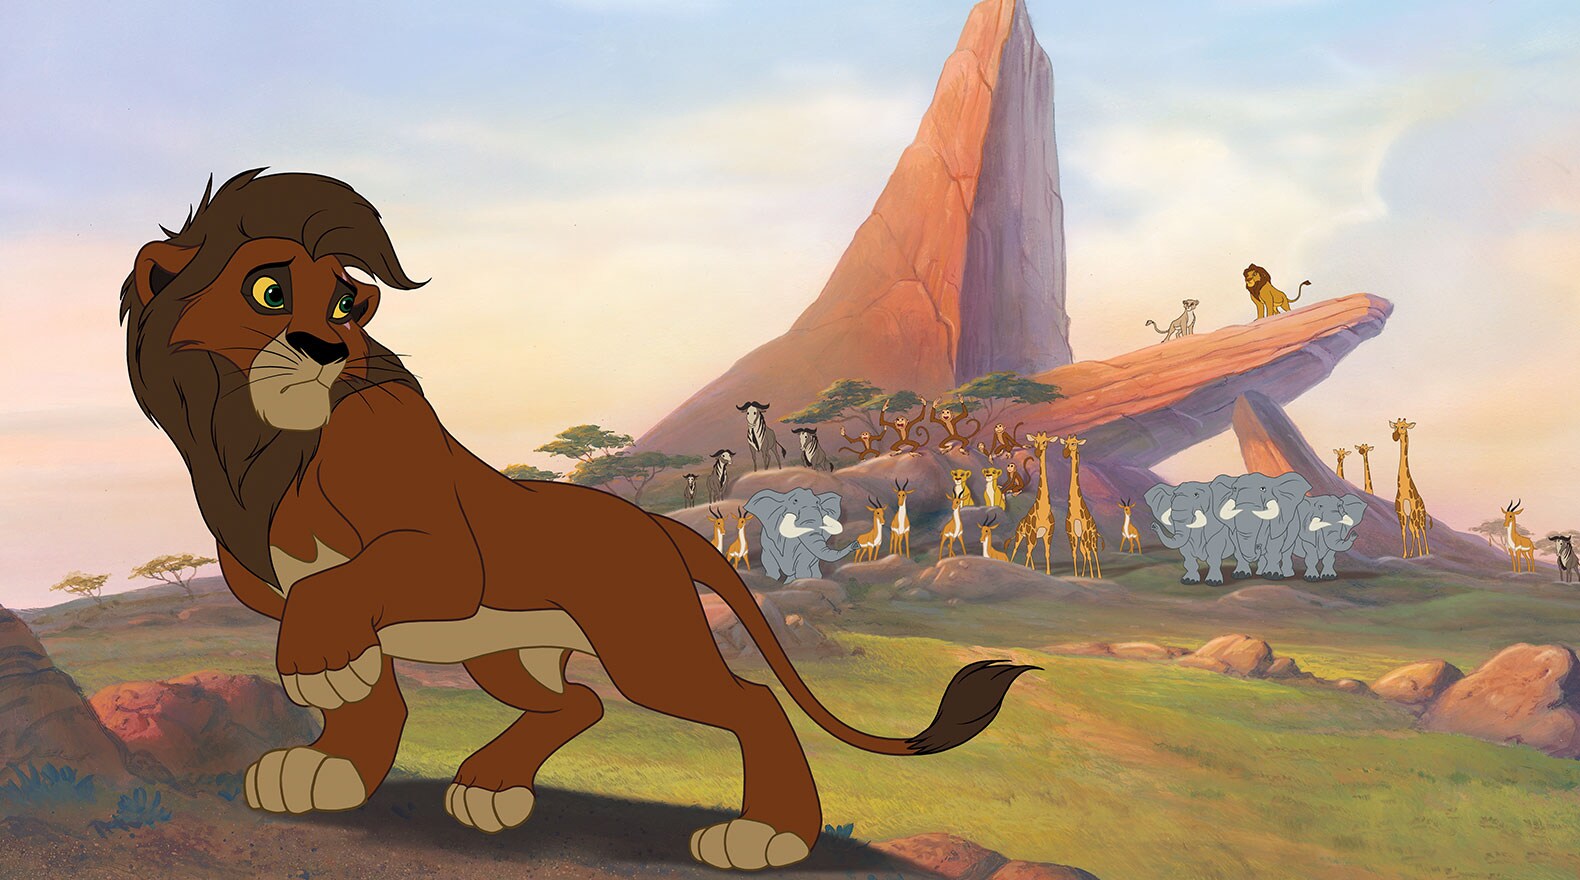 The Lion King 2 Simba's Pride Gallery Disney Movies